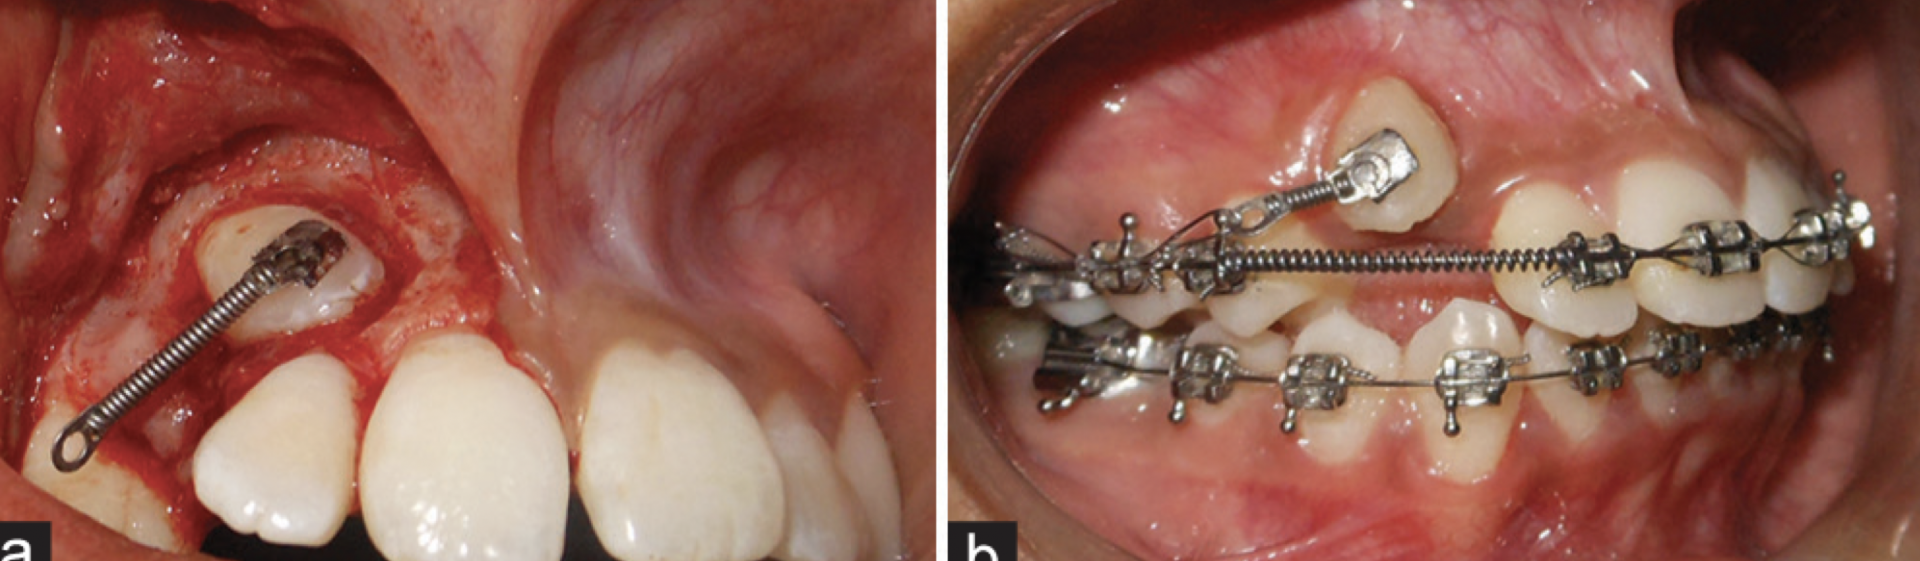 BDR CCLXXV: Resorte W para manejo de diente impactado.